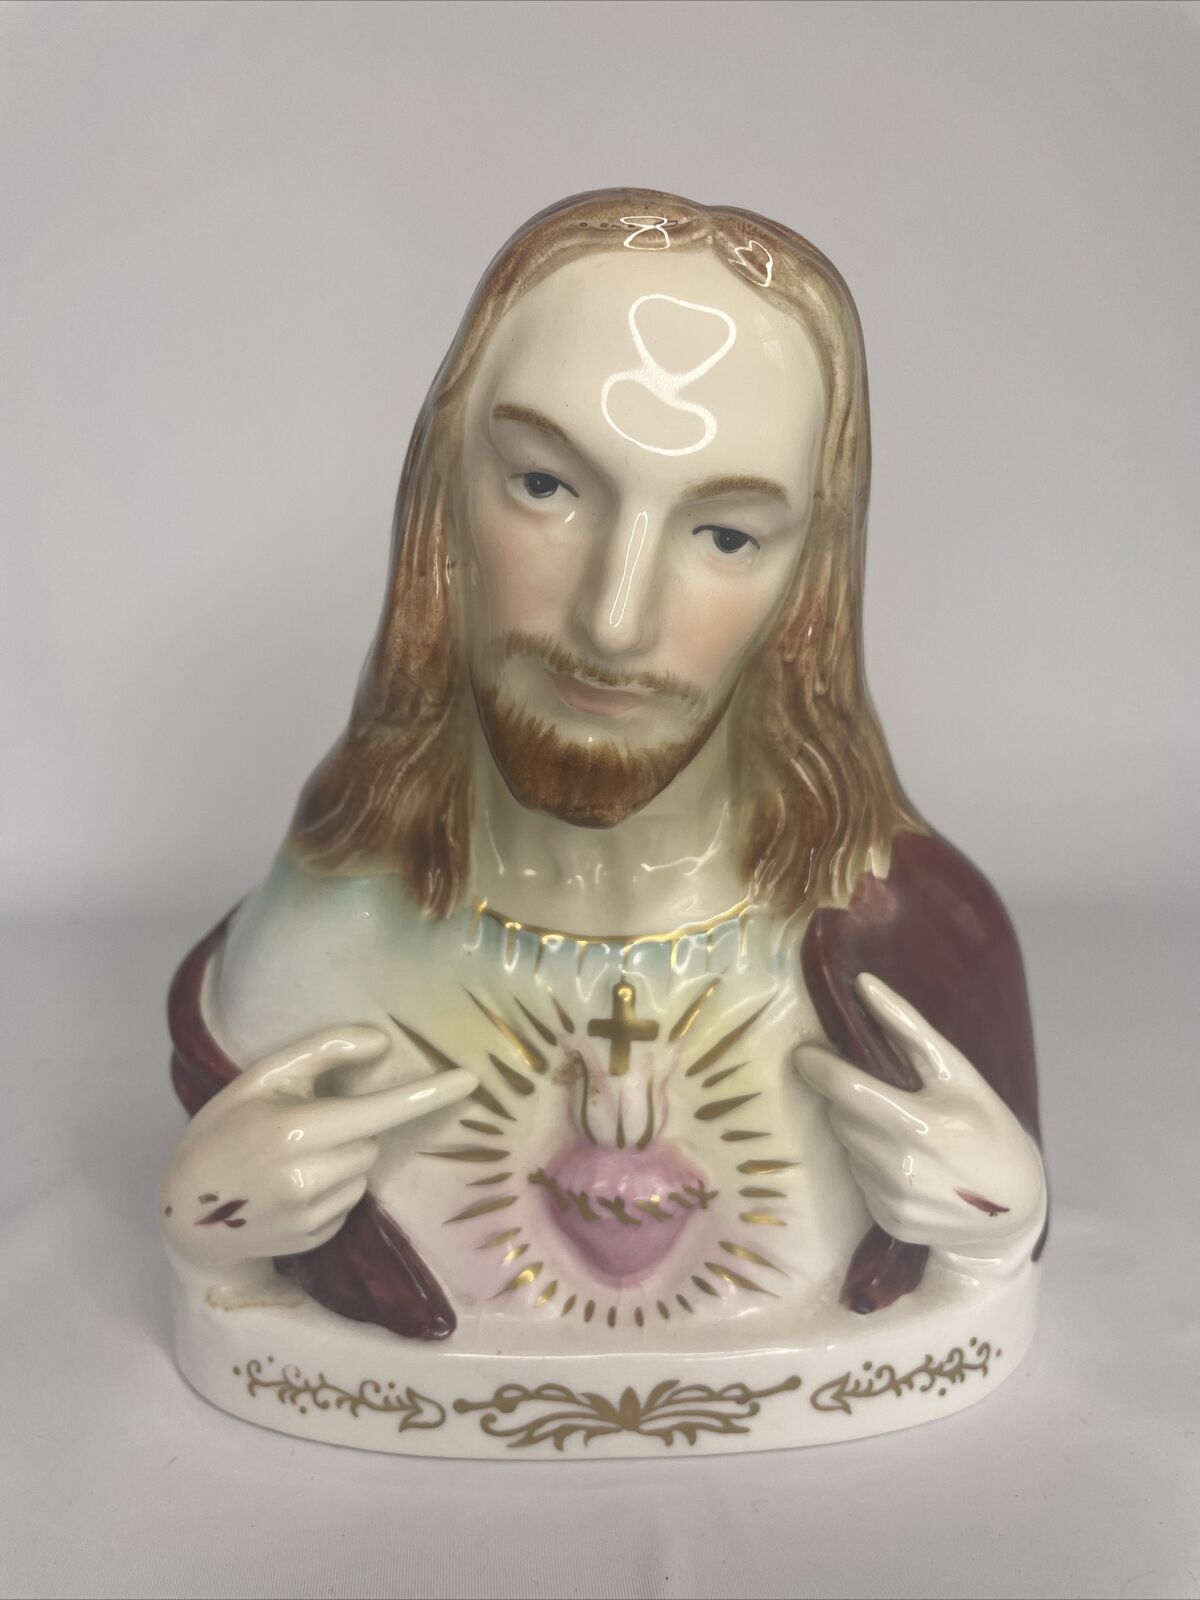 Vintage 1950s Napco Giftcraft Sacred Heart Jesus Porcelain Bust Statue Figure 6”